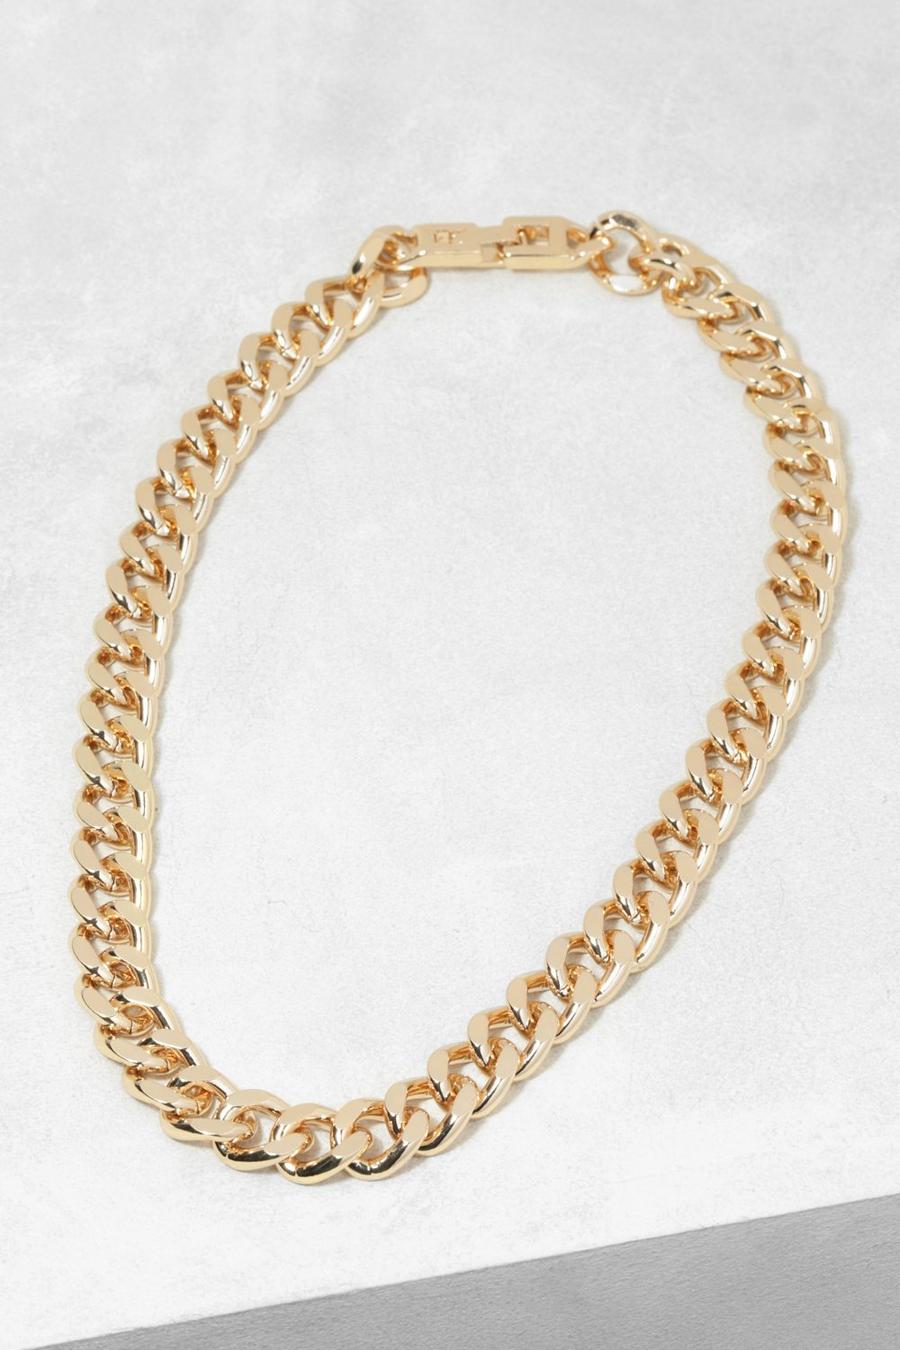 זהב שרשרת עם חוליות עבות במיוחד עם קצה משולב